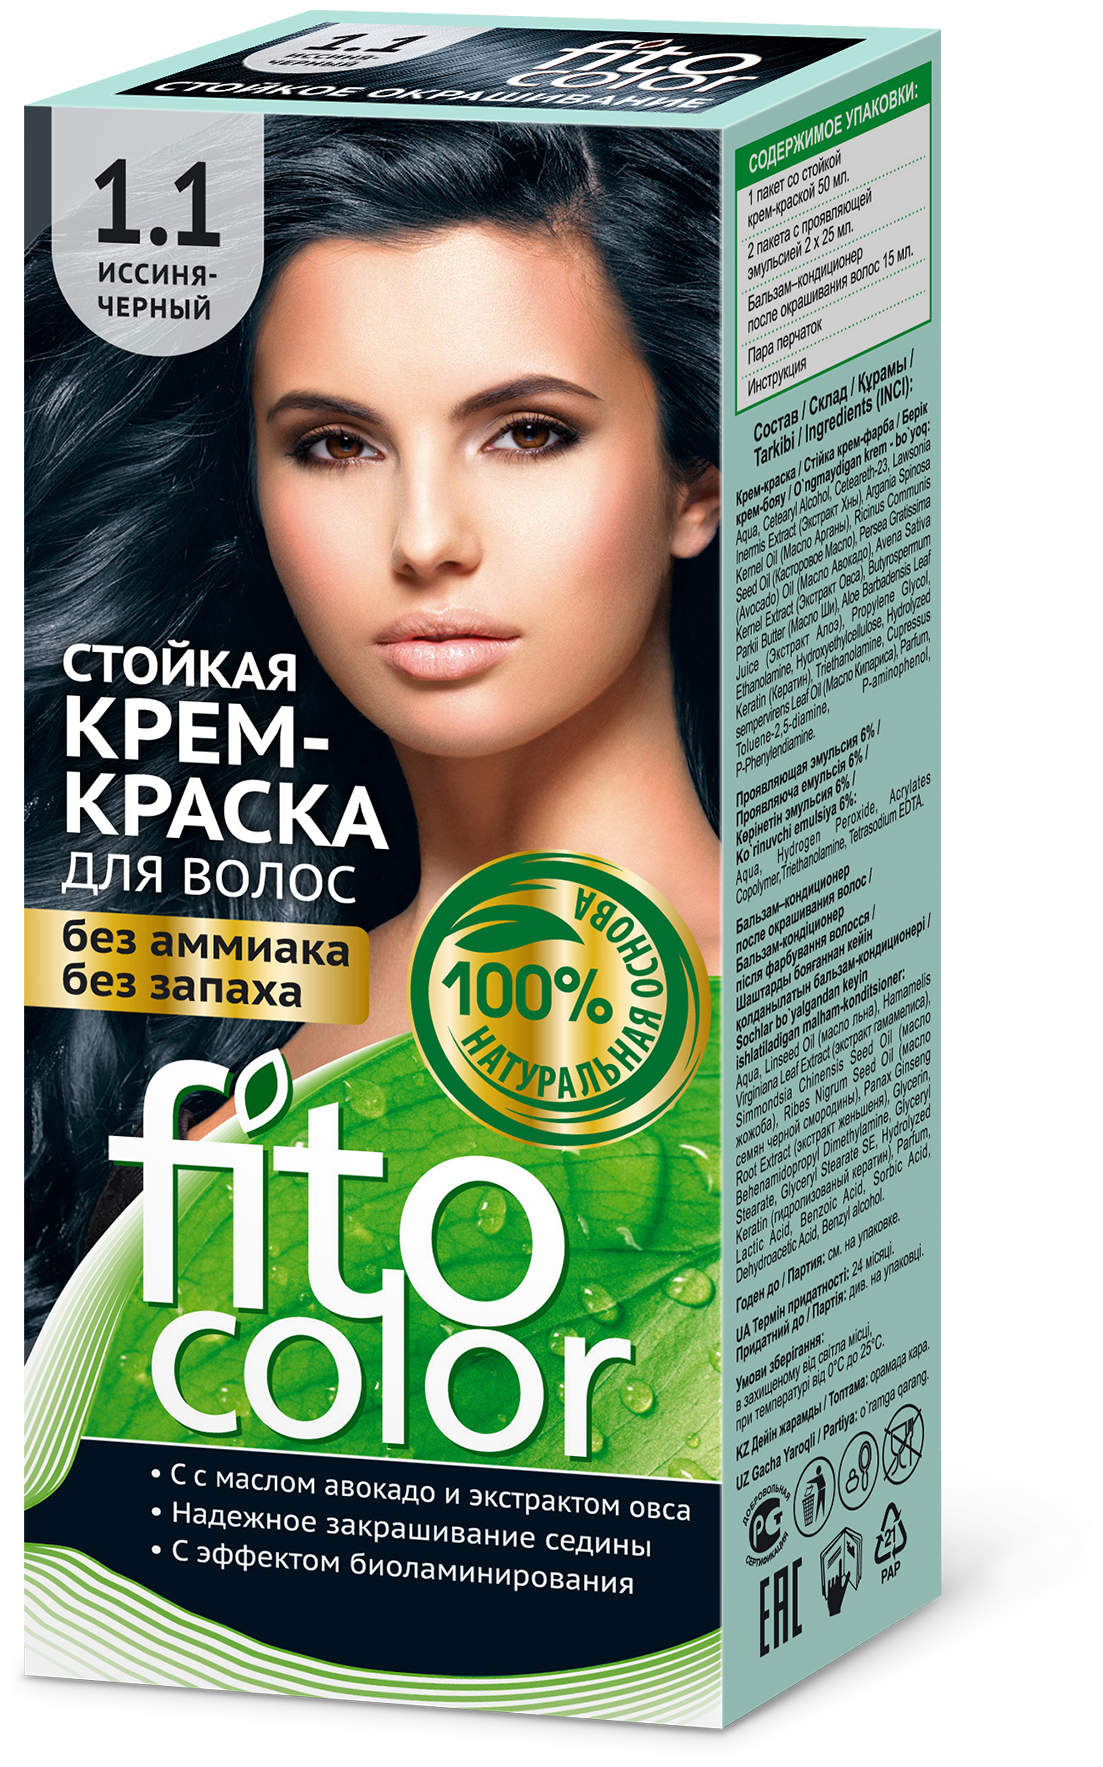 Fito косметик Fitocolor стойкая крем-краска для волос 115 мл